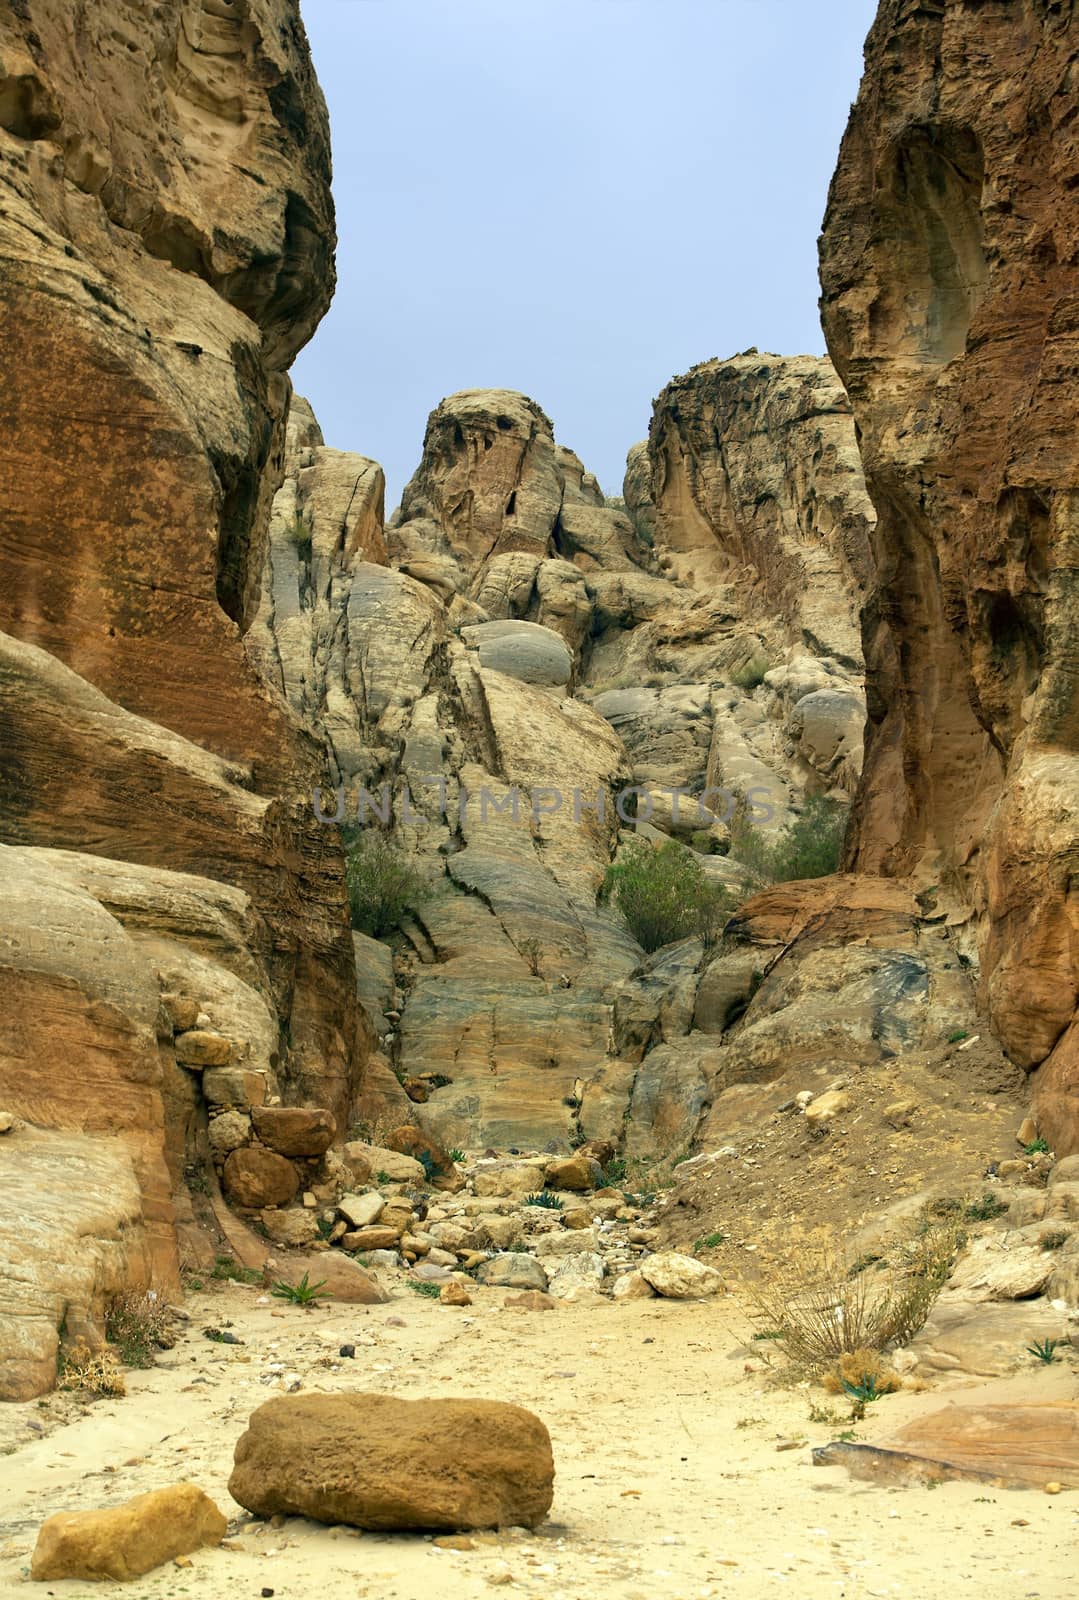 landscape near of Petra in Jordan by irisphoto4